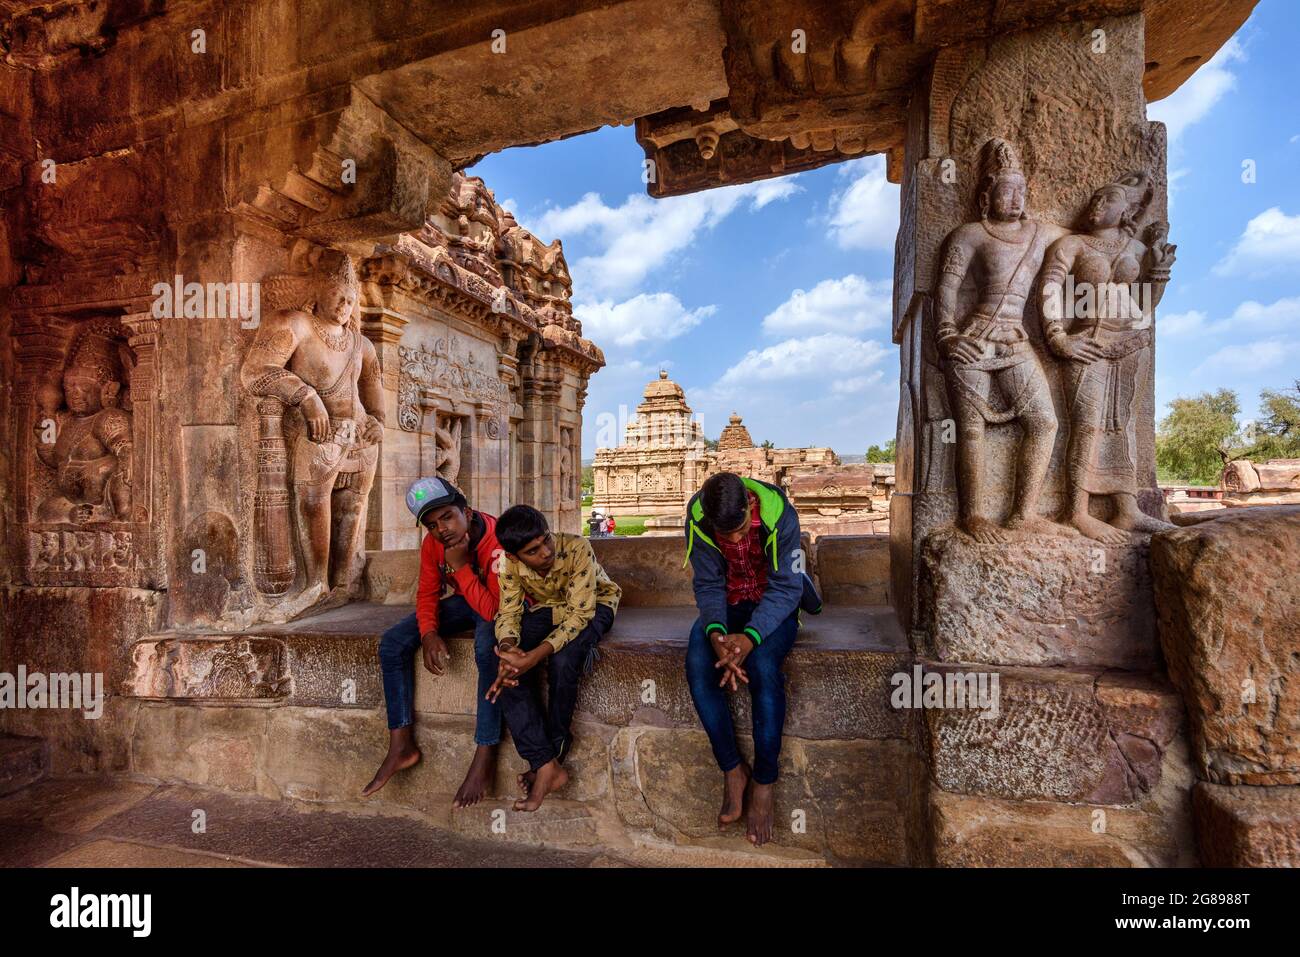 Pattadakal, Karnataka, India - January 11, 2020 : The Virupaksha Temple at Pattadakal temple complex, dating to the 7th-8th century, the early Chaluky Stock Photo